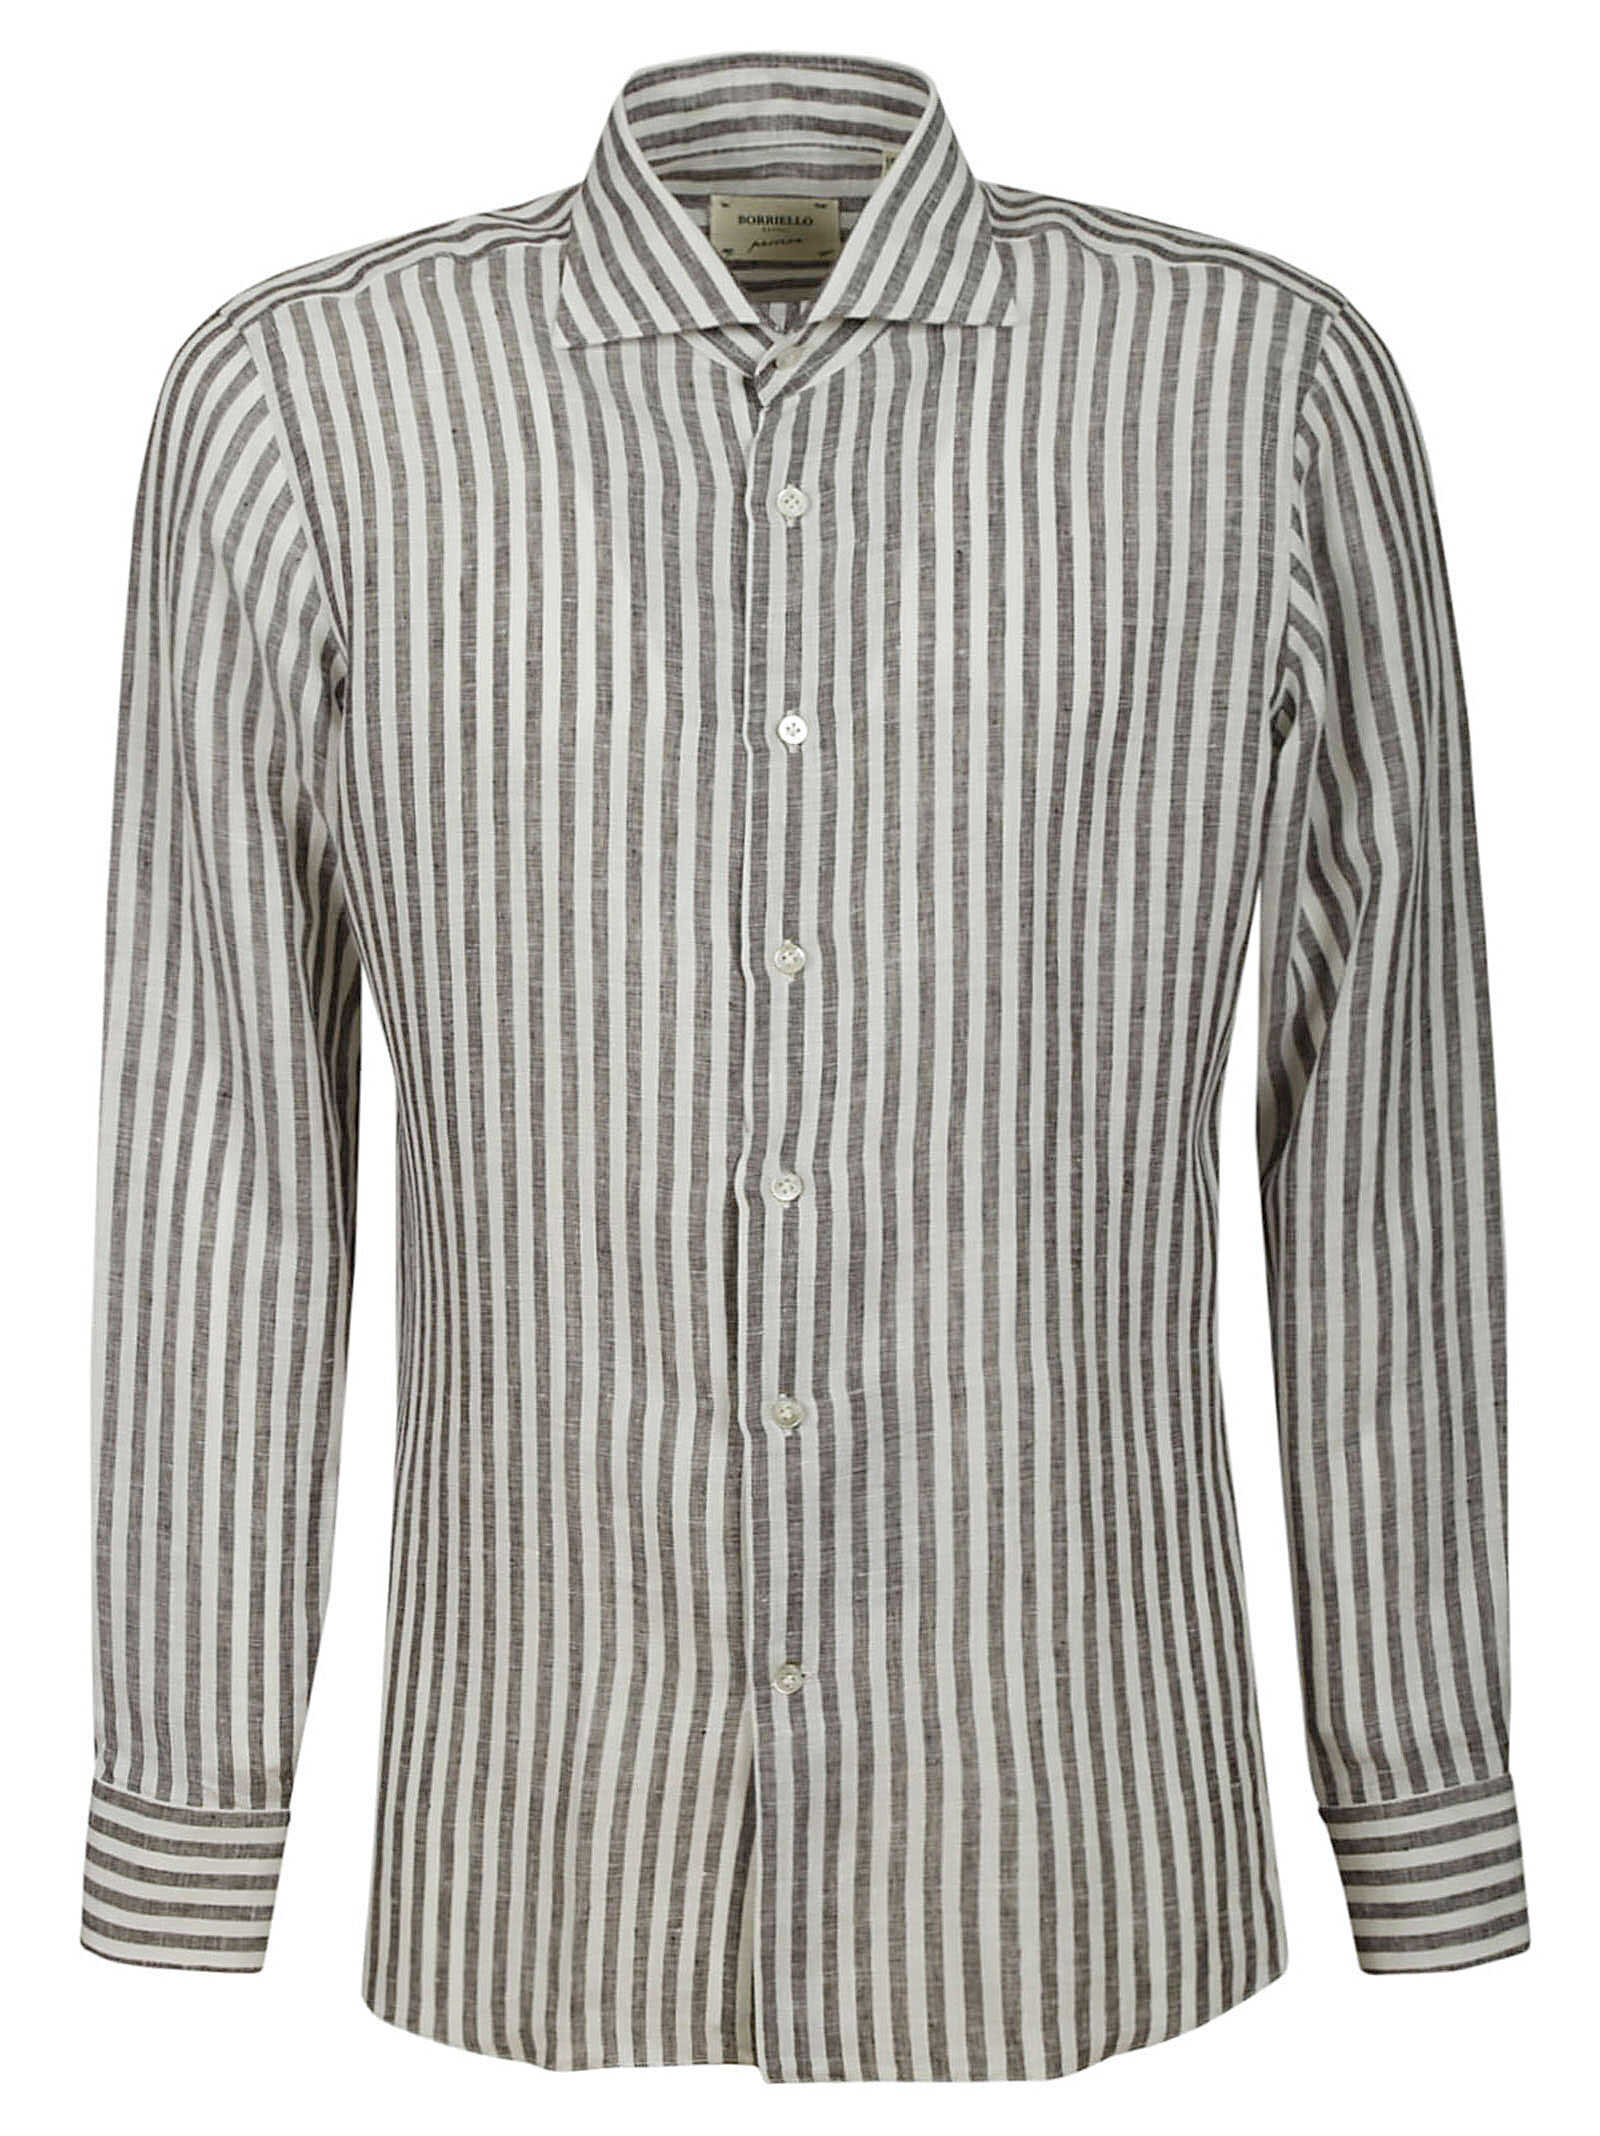 BORRIELLO Borriello Shirt 14034 5 GREY Grey